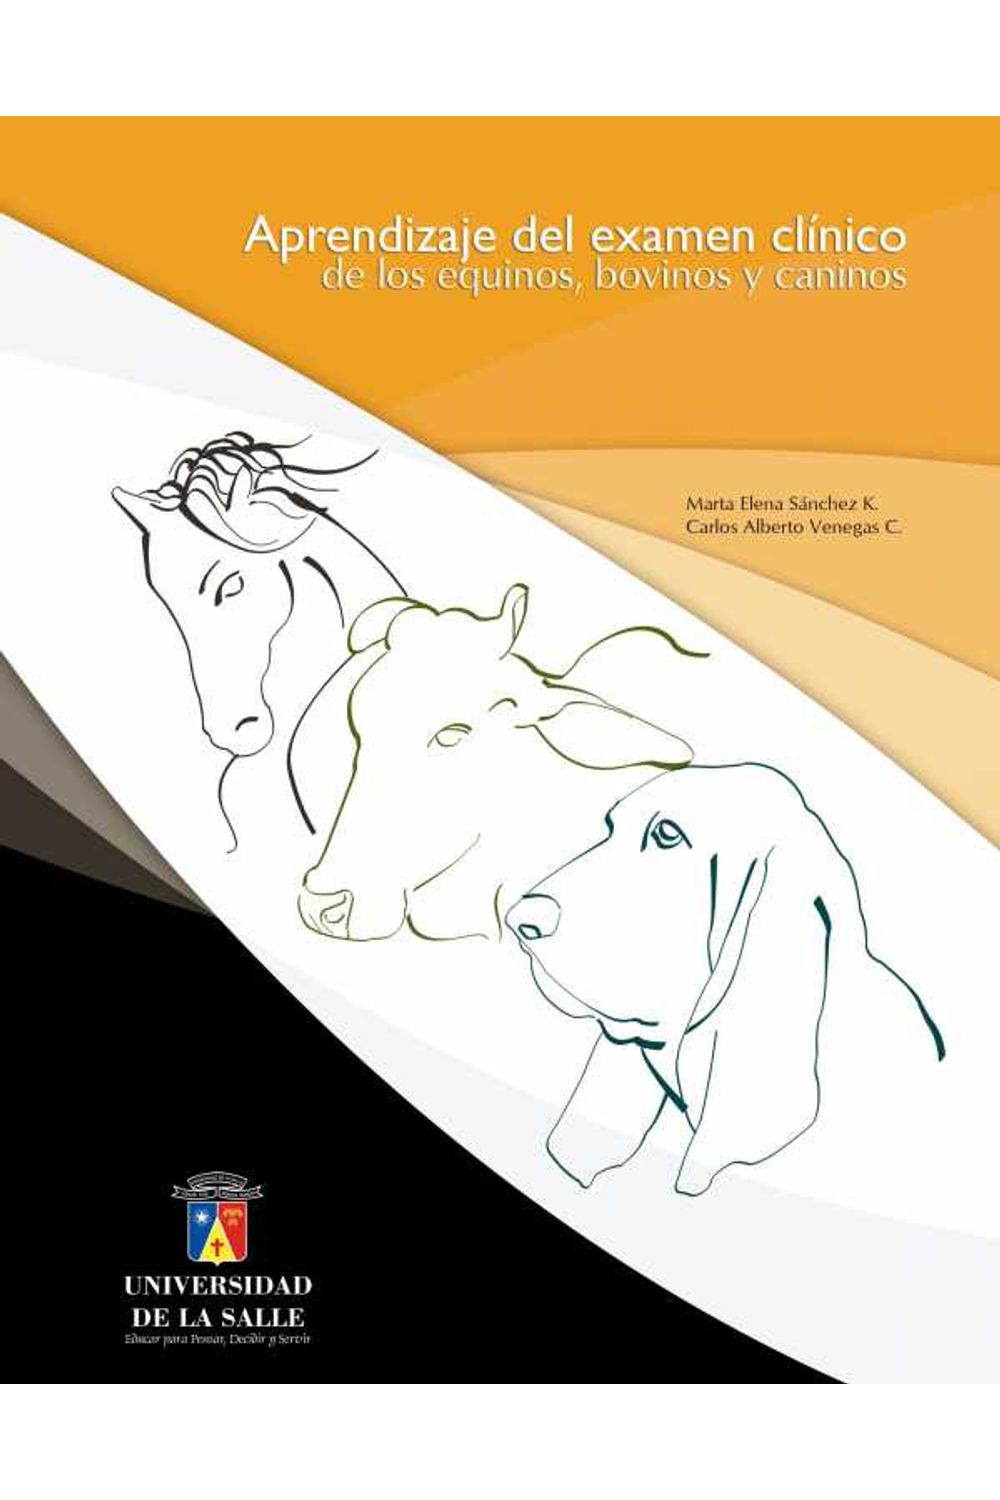 bw-aprendizaje-del-examen-cliacutenico-de-los-equinos-bovinos-y-caninos-u-de-la-salle-9789589290873